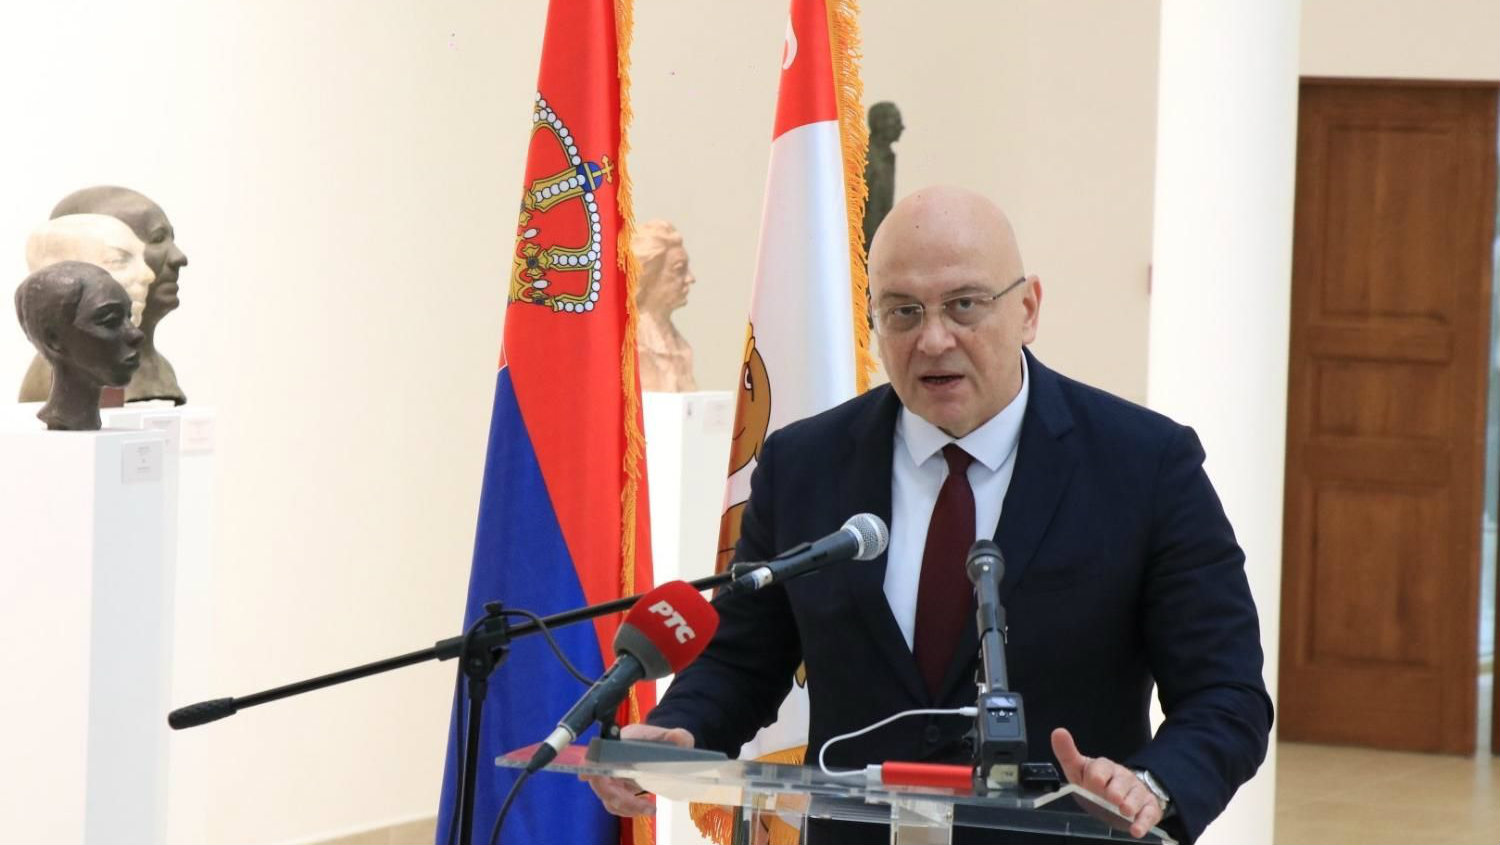 Vukosavljević: Voleo bih da Ministarstvo ima veća ovlašćenja, da može da kazni one koji krše zakon 1